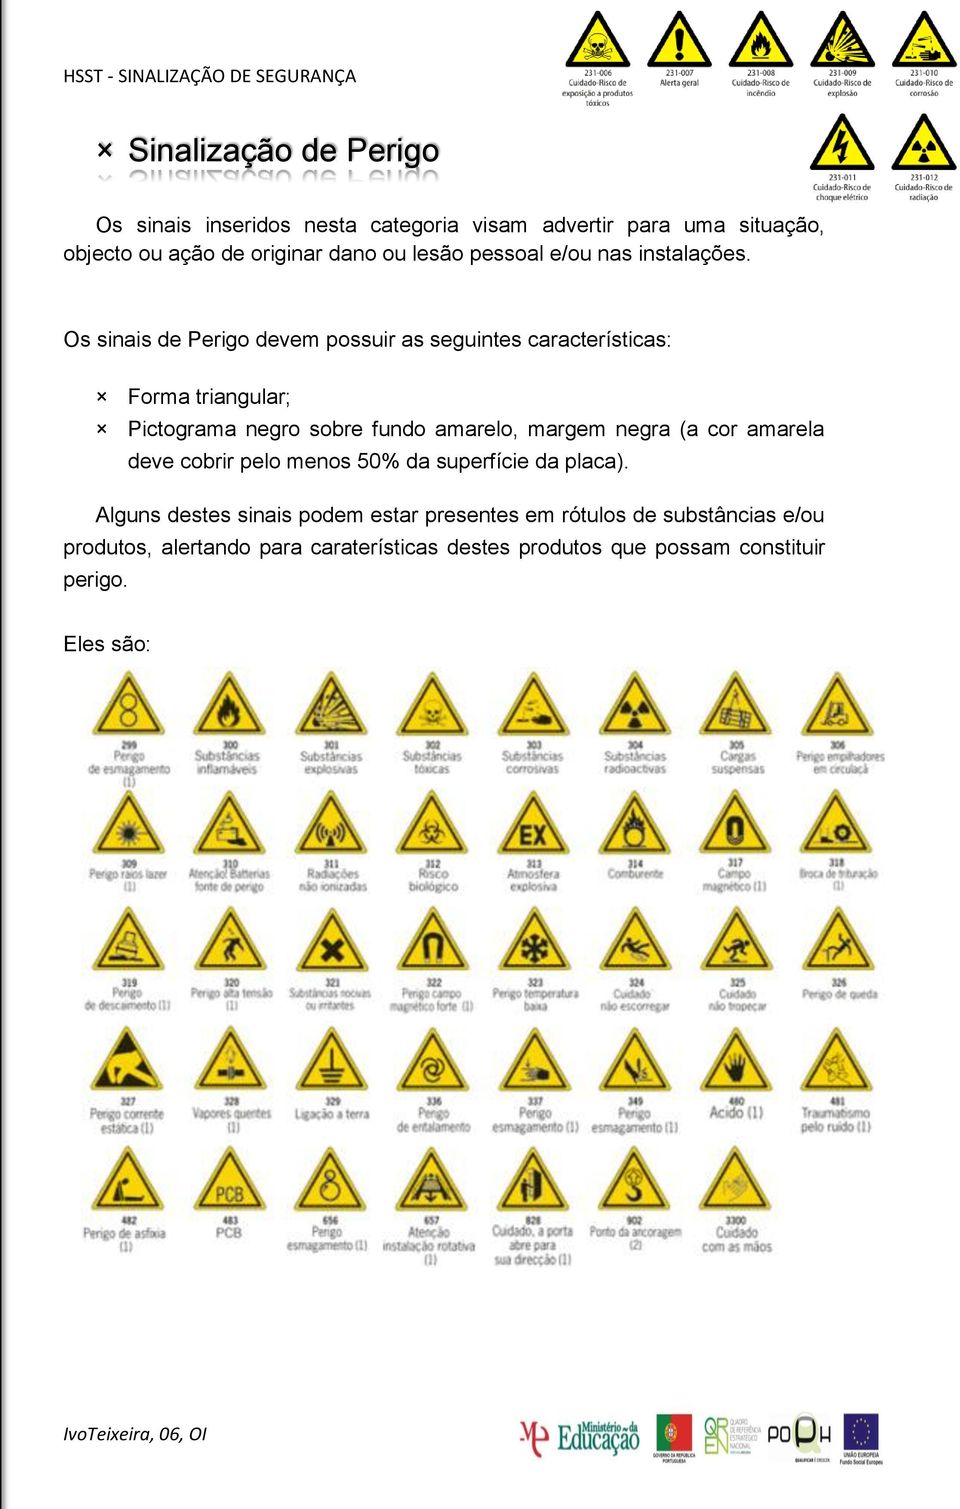 Os sinais de Perigo devem possuir as seguintes características: Forma triangular; Pictograma negro sobre fundo amarelo, margem negra